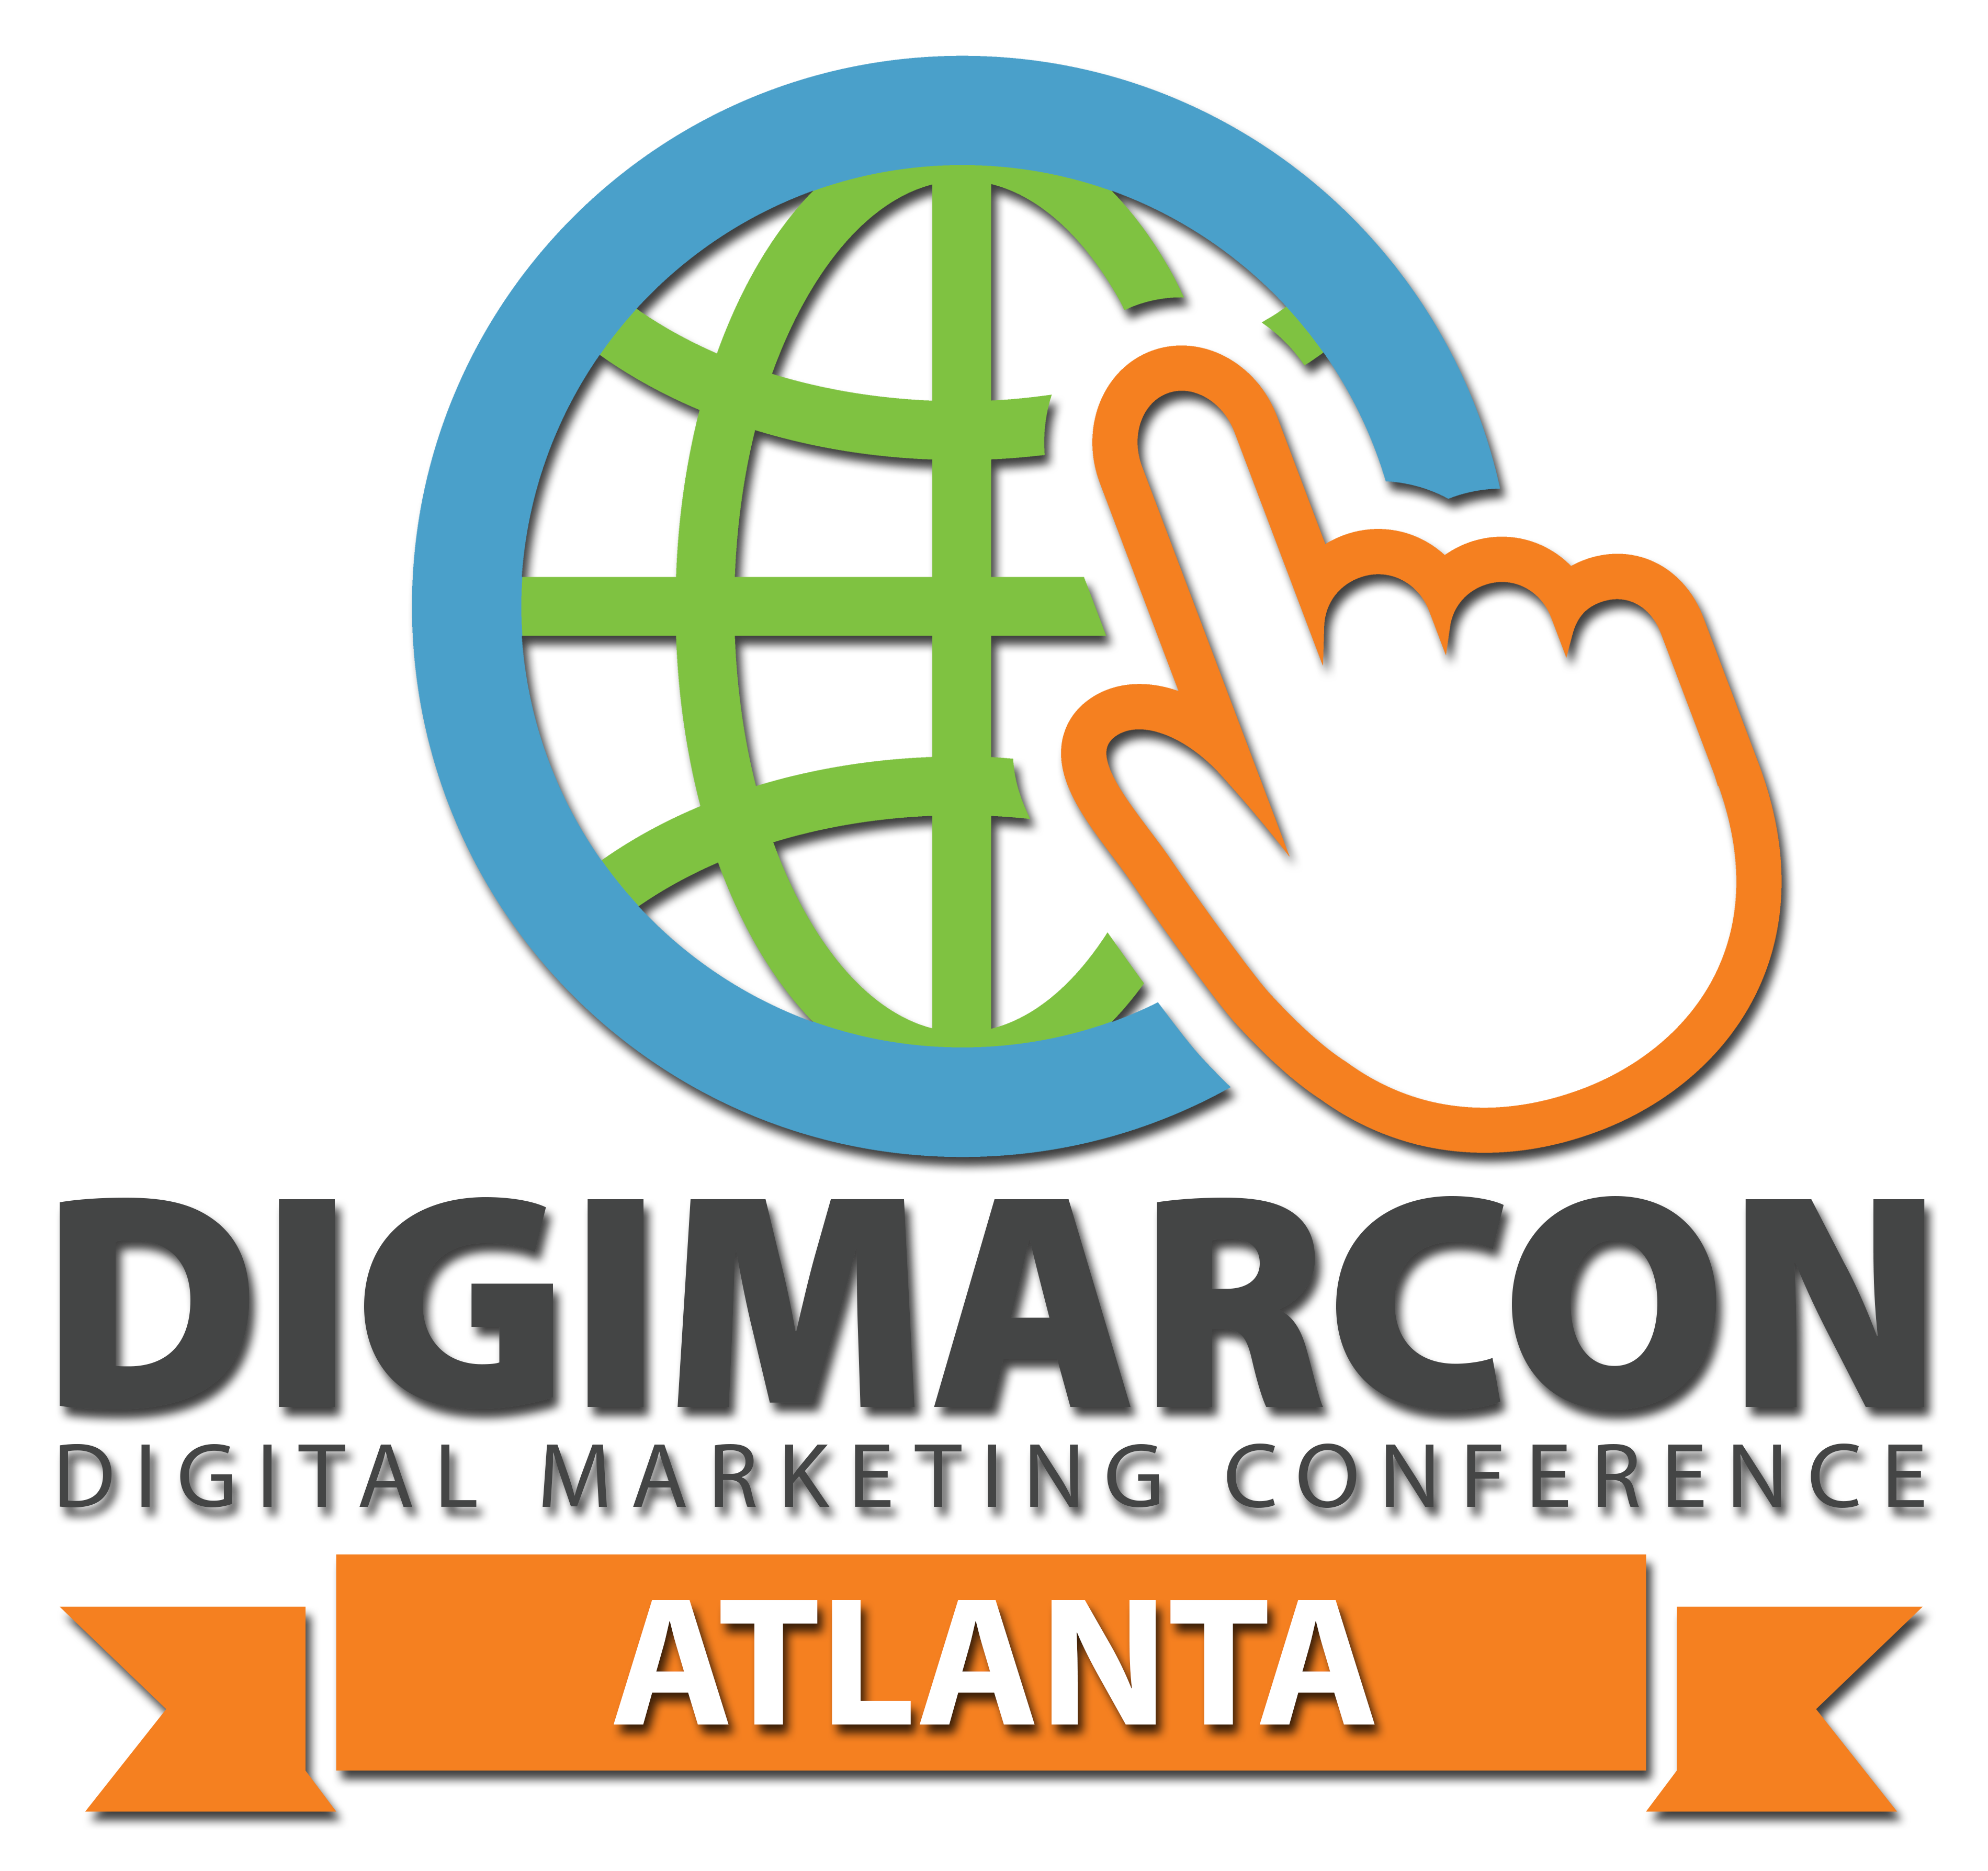 DigiMarCon Barcelona – Digital Marketing Conference & Exhibition